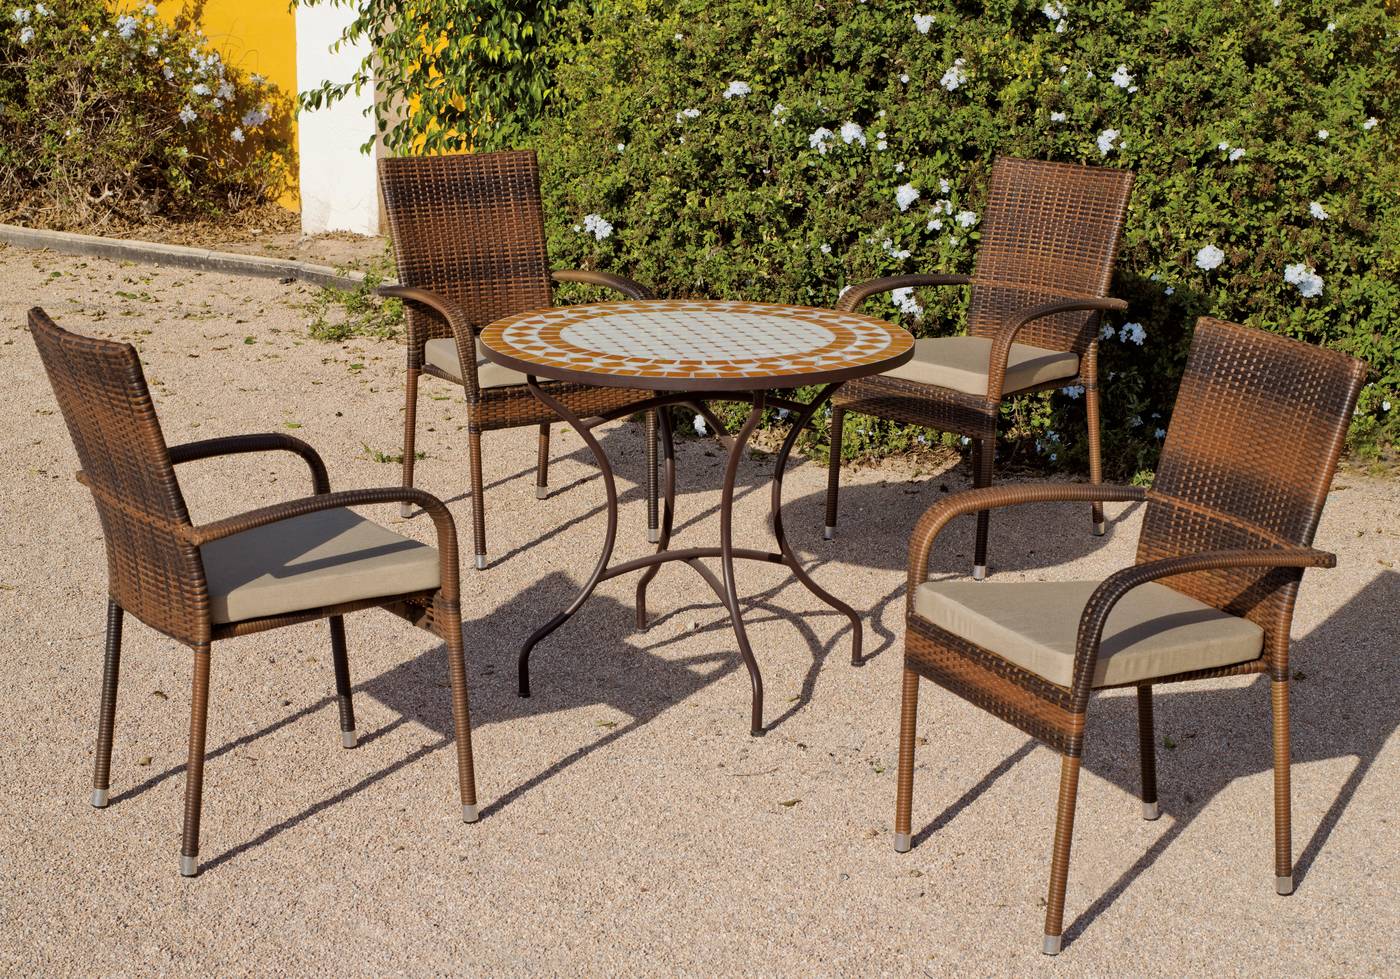 Conjunto de acero forjado para jardín: mesa redonda con tablero mosaico + 4 sillones de ratán sintético + 4 cojines.